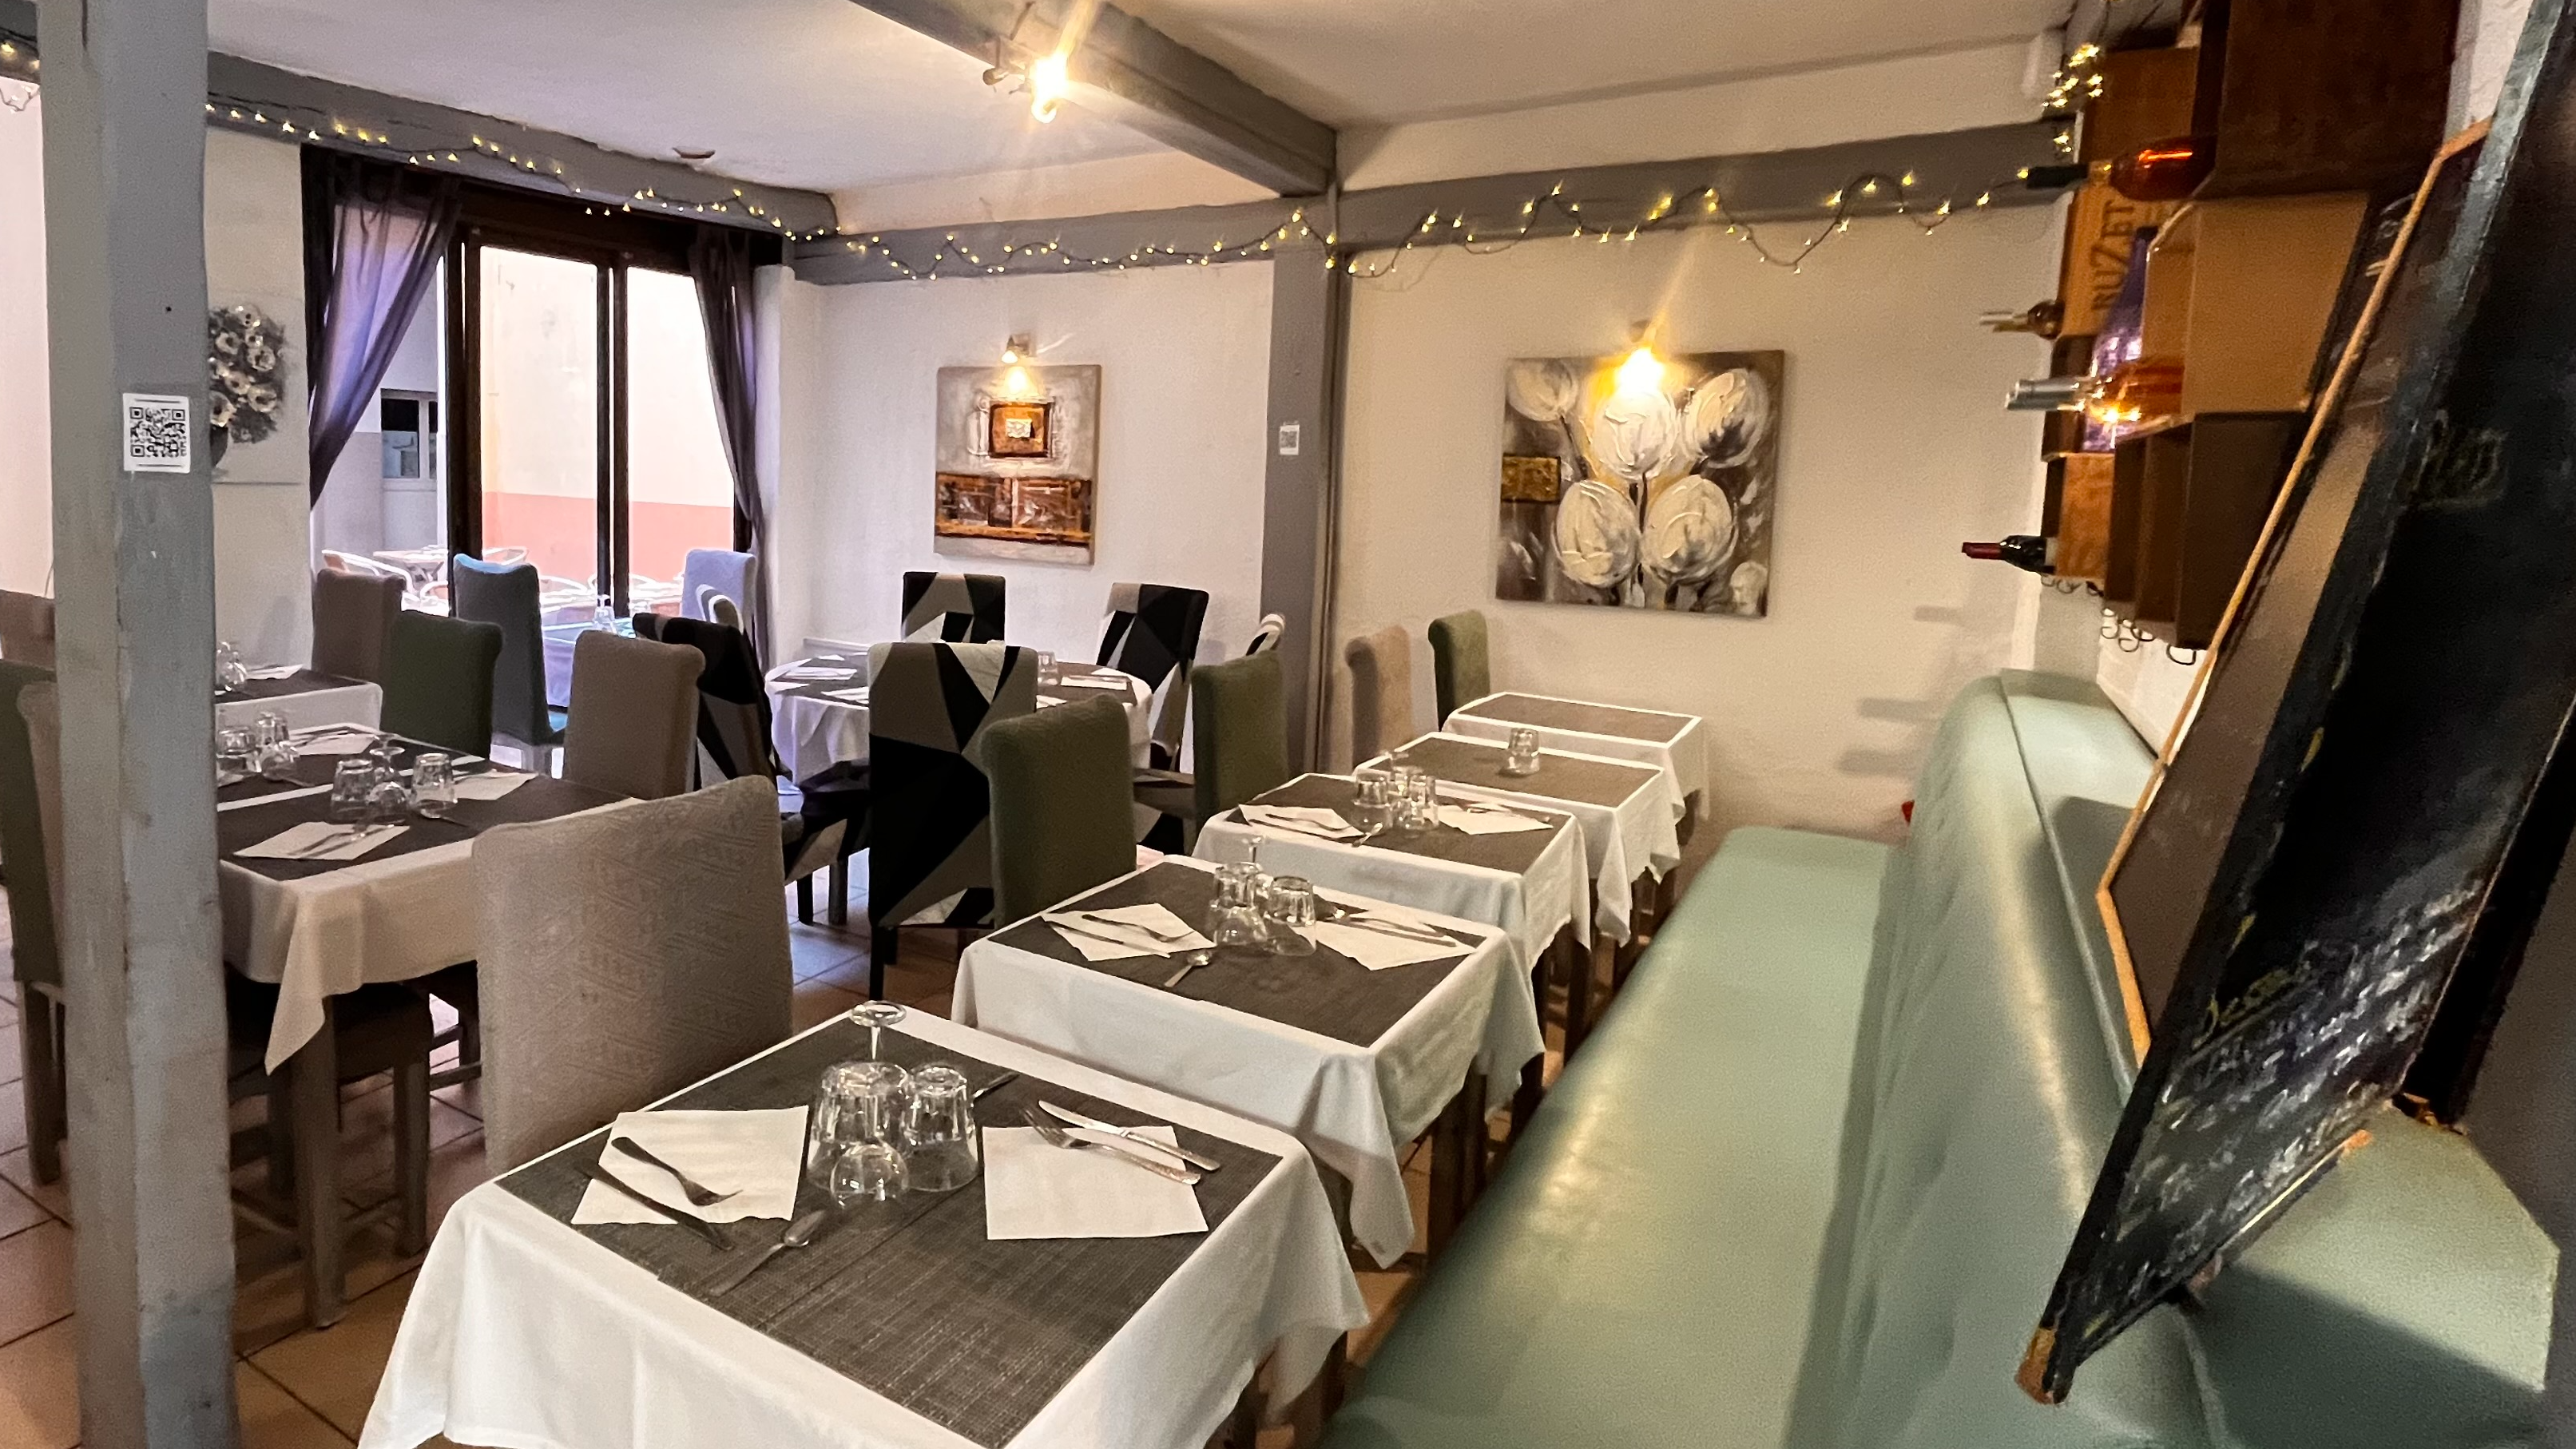 Restaurant à vendre - 115.0 m2 - 06 - Alpes-Maritimes